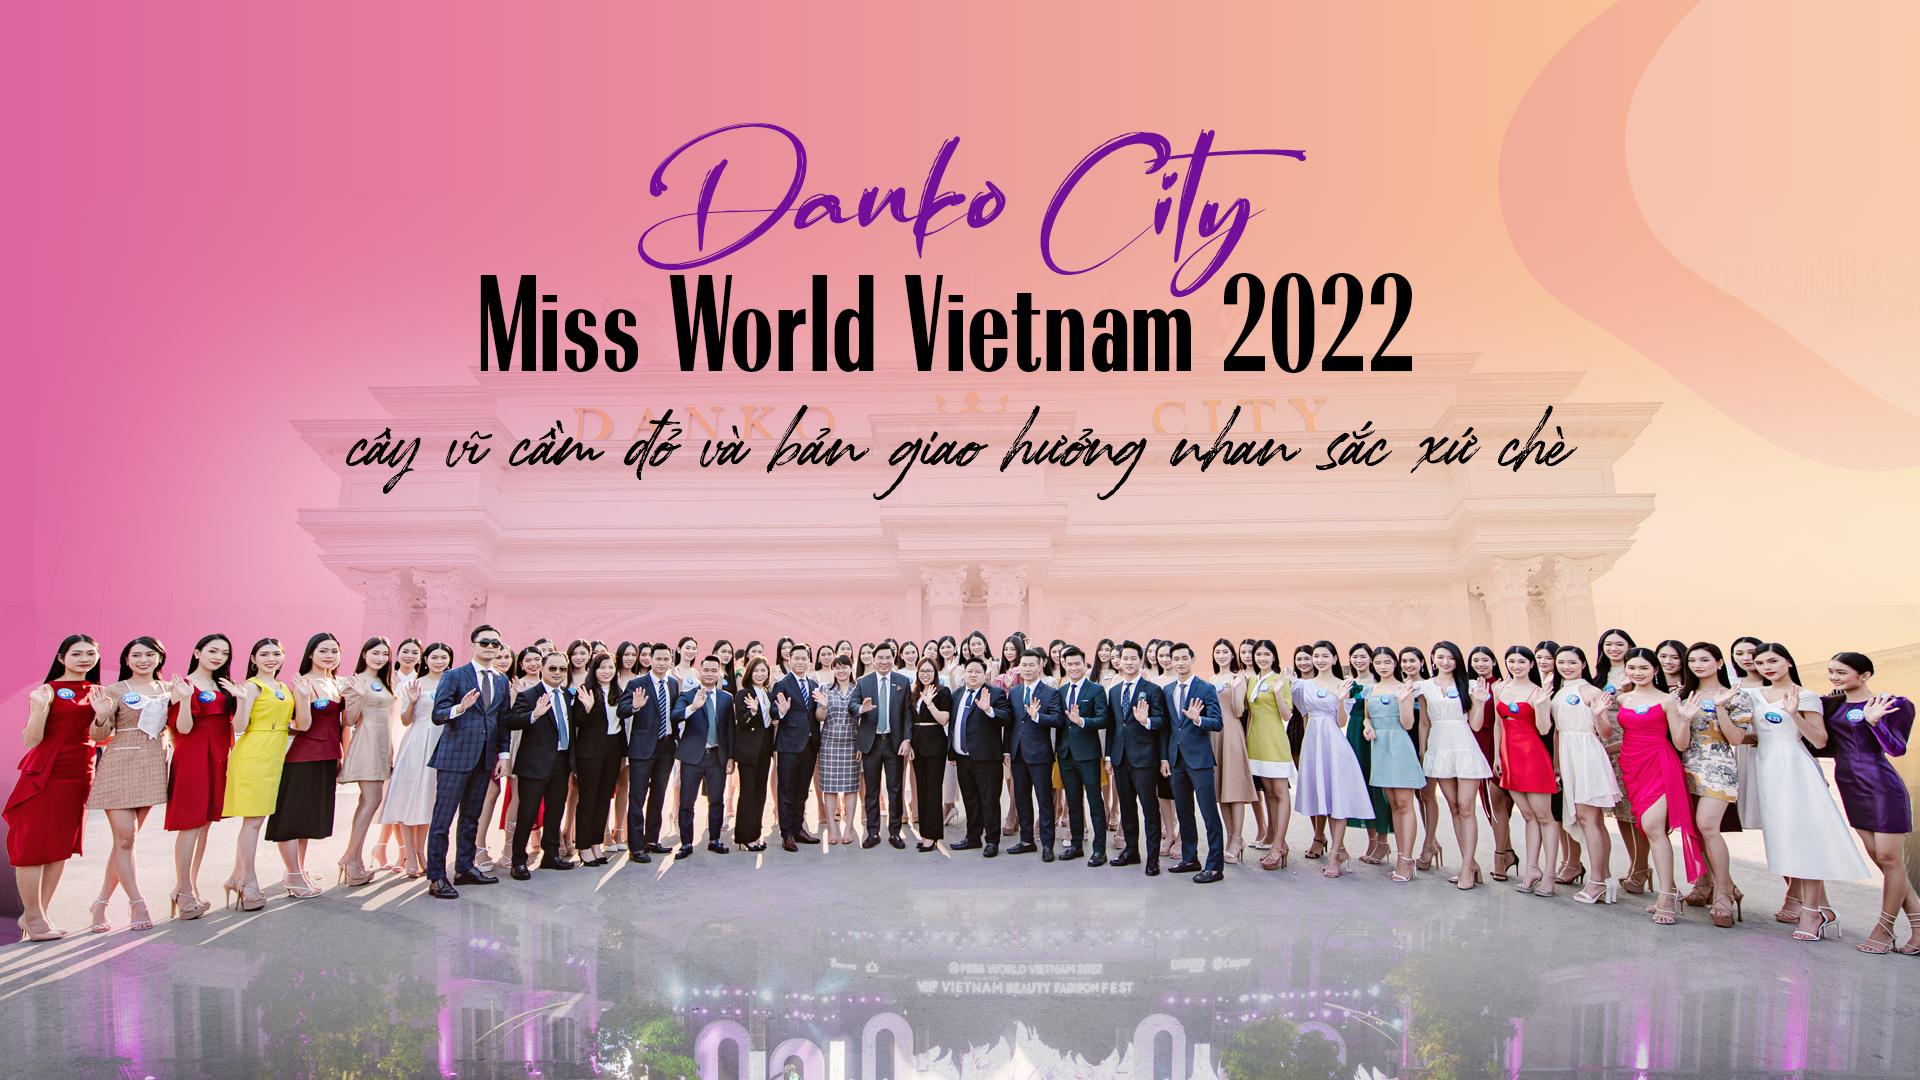 Miss World Vietnam 2022, Danko City, cây vĩ cầm đỏ và bản giao hưởng nhan sắc xứ chè